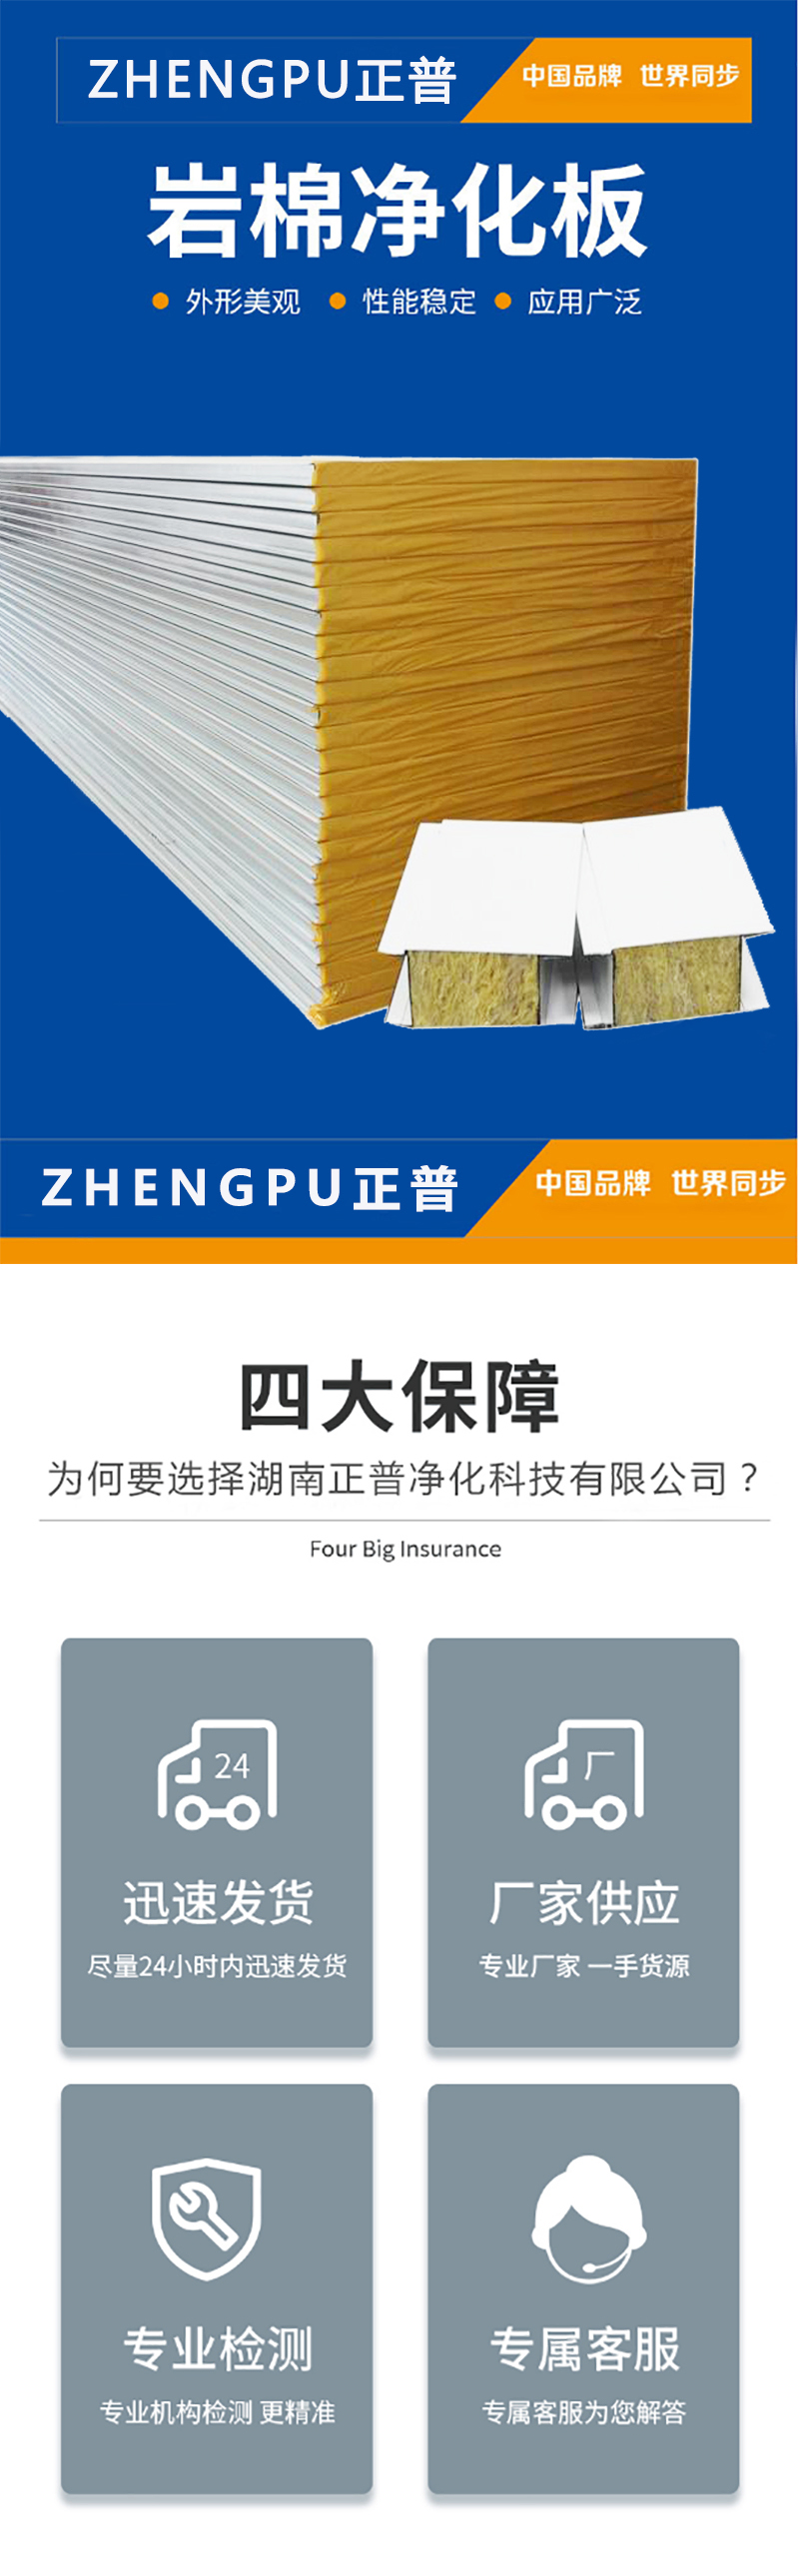 球王会官网-（中国）官方网站,湘潭彩钢夹芯板销售,湘潭彩钢板销售